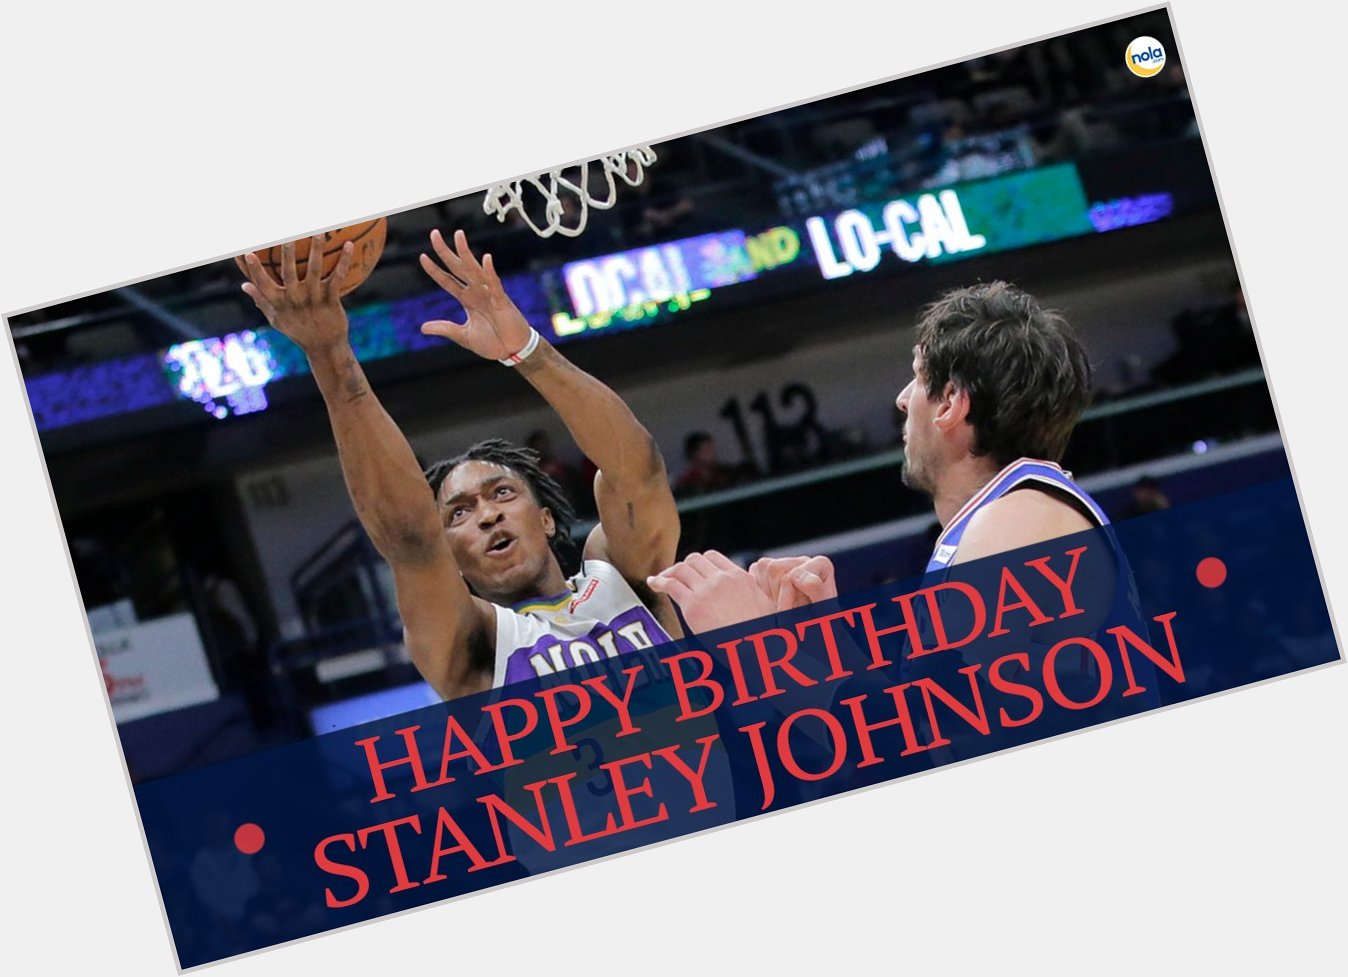 Happy birthday, Stanley Johnson!  